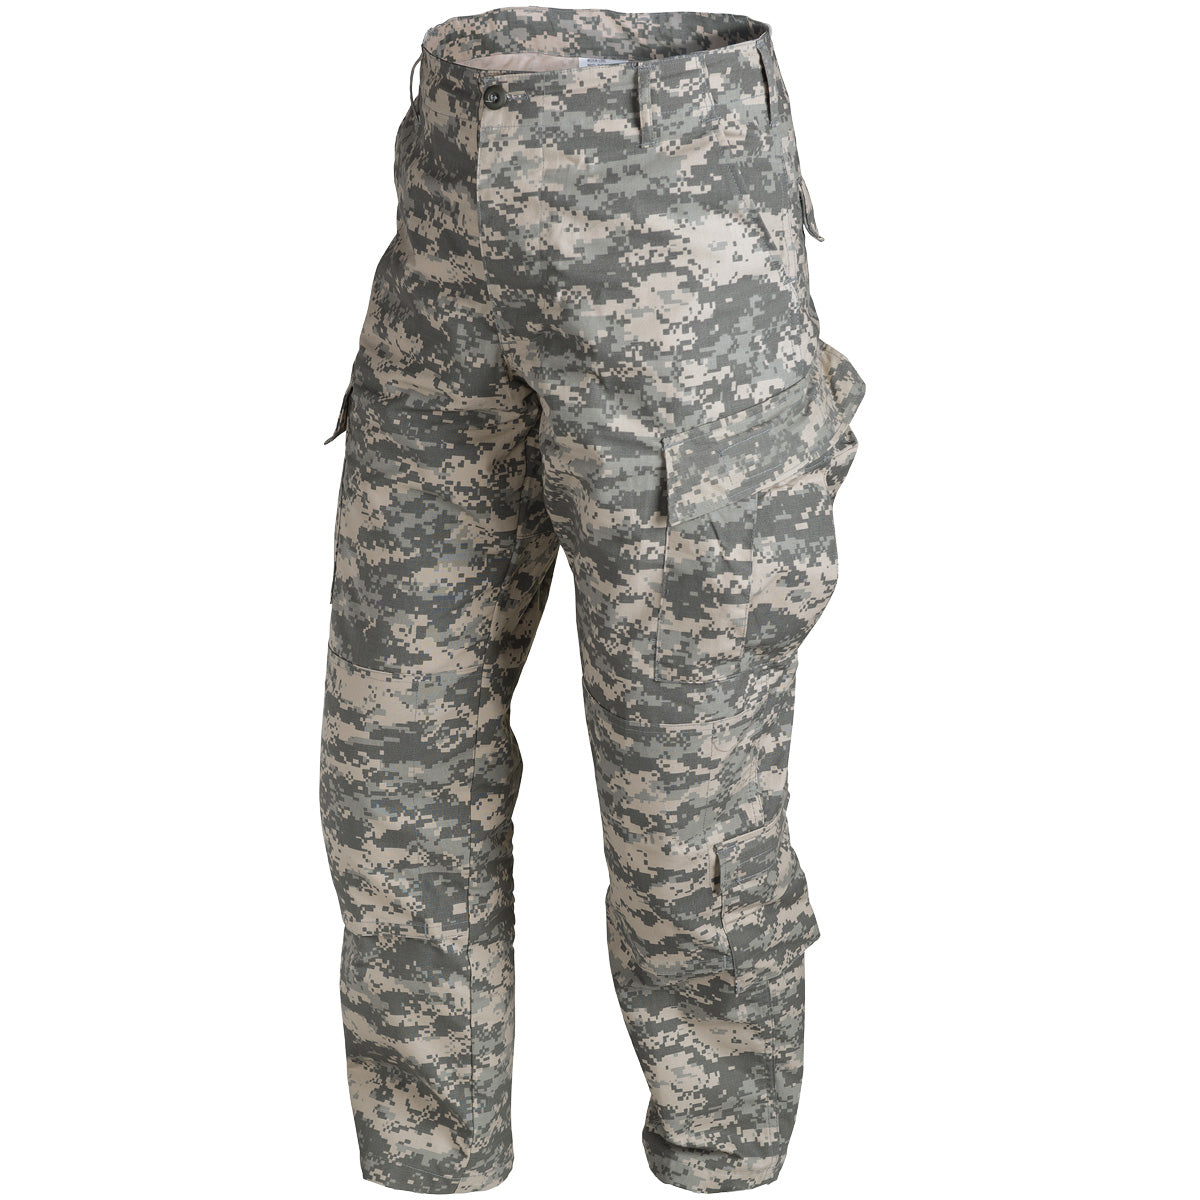 Men's Pants – McGuire Army Navy